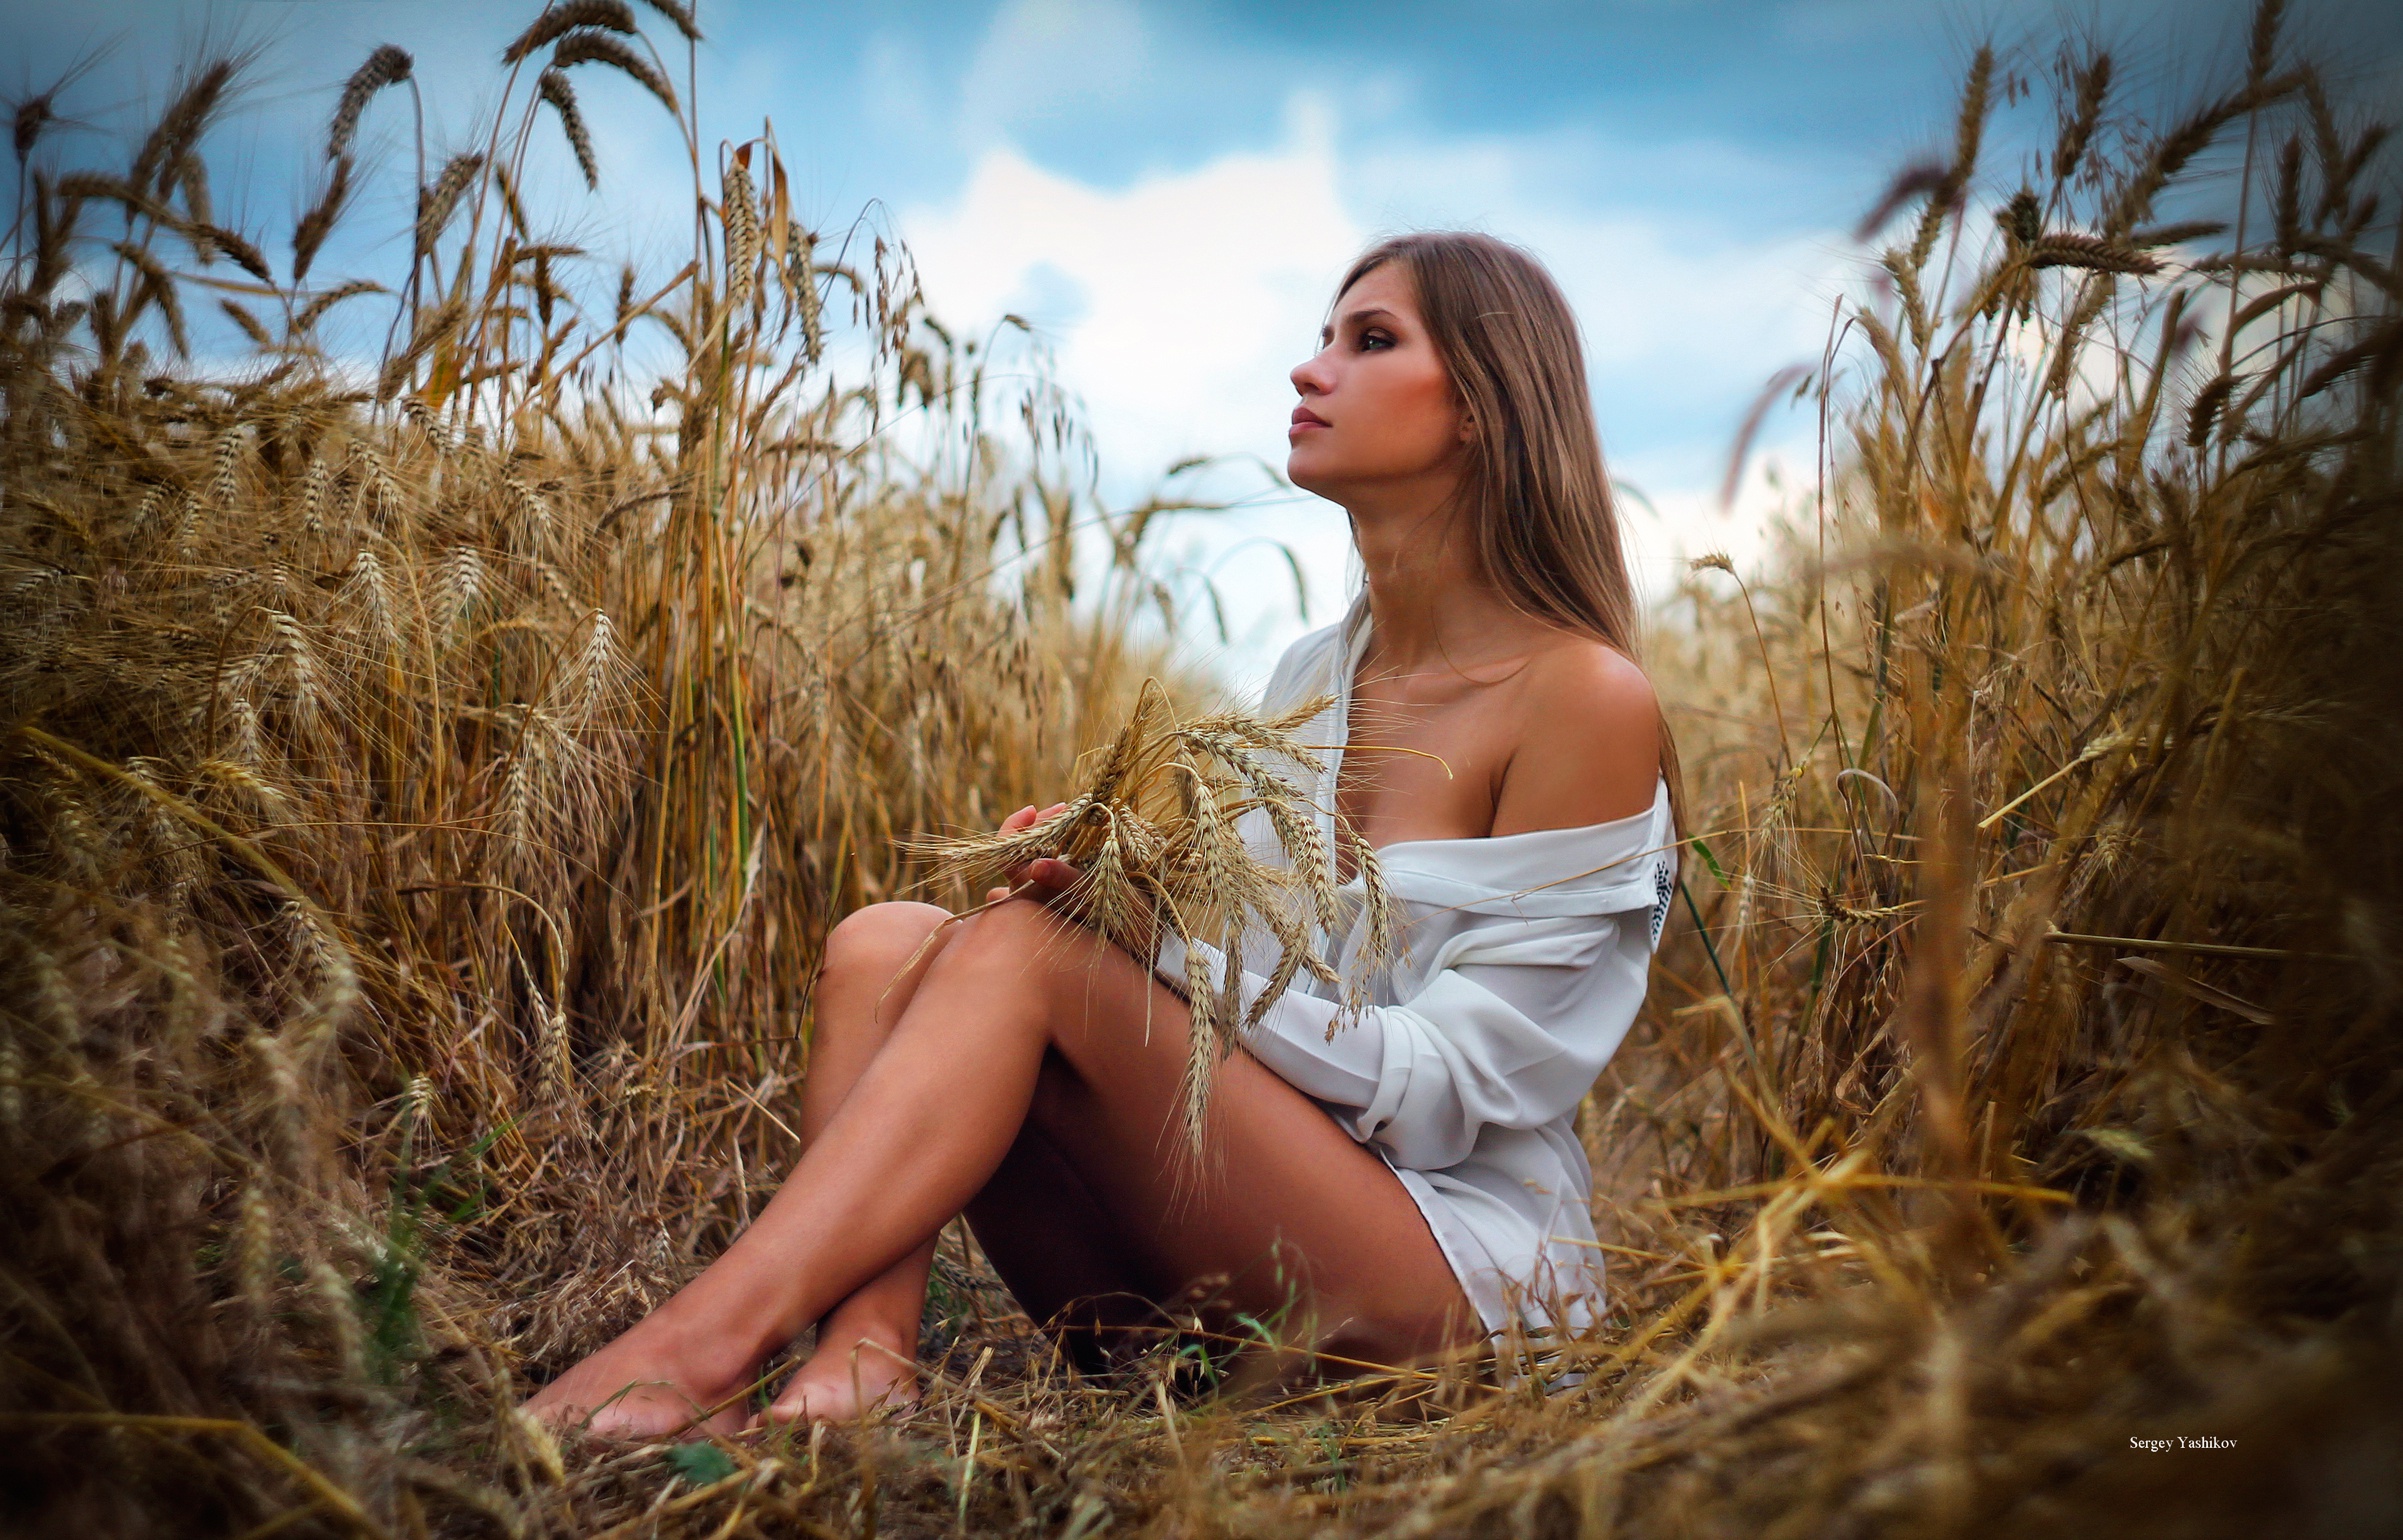 Девка задрала ногу на пшеничном поле показав влагалище